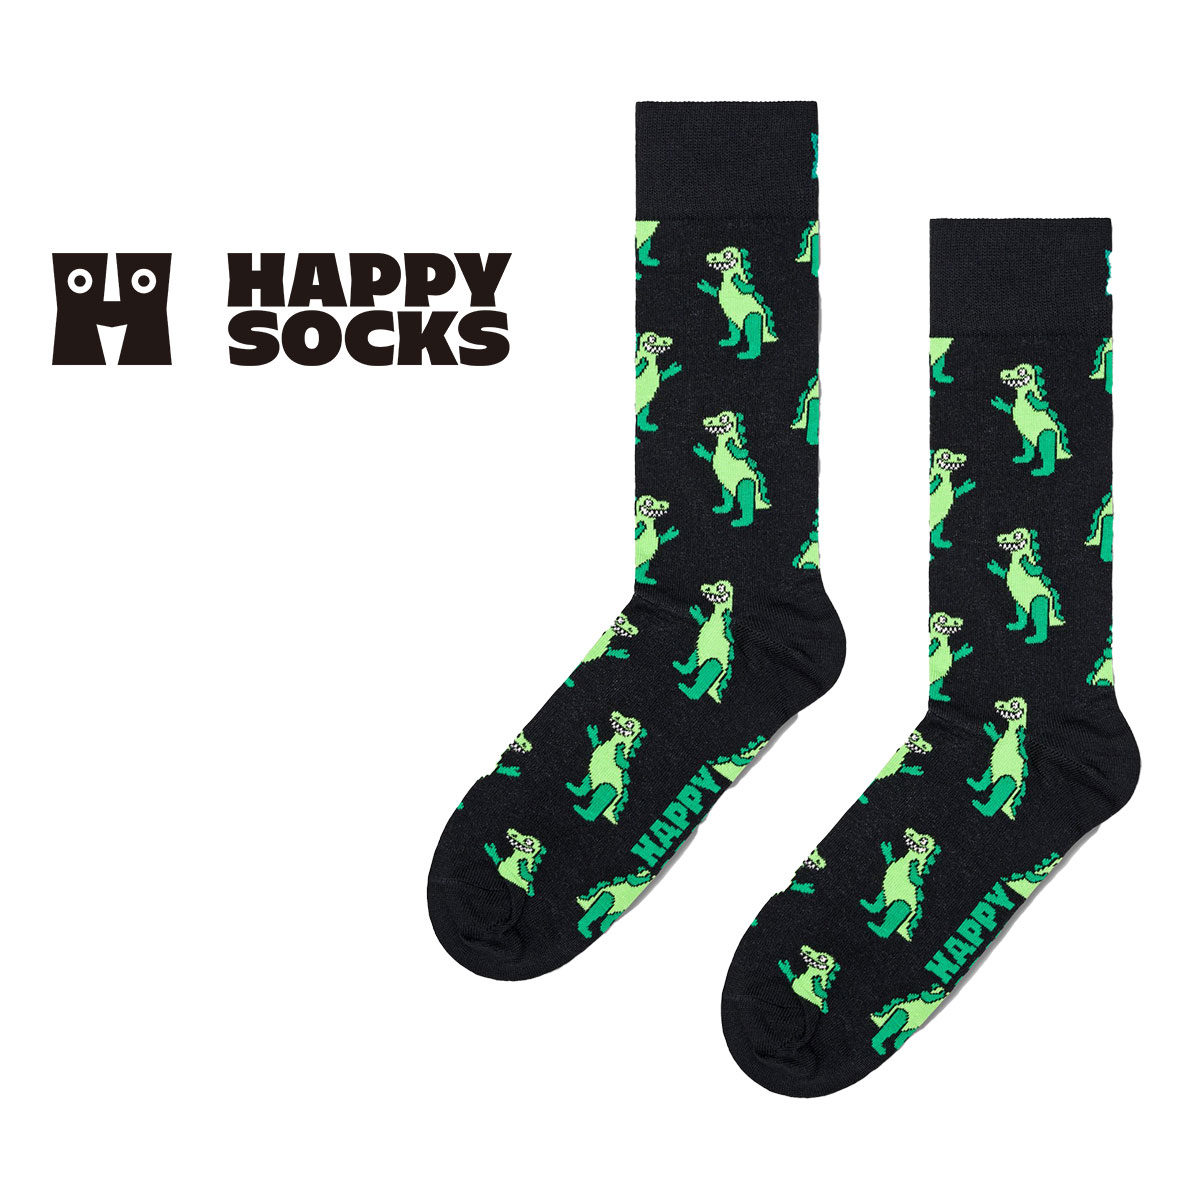 【24SS】Happy Socks ハッピーソックス Inflatable Dino ( インフレータブル ディノ ) 恐竜 クルー丈 ソックス ユニセックス メンズ ＆ レディース 10240059